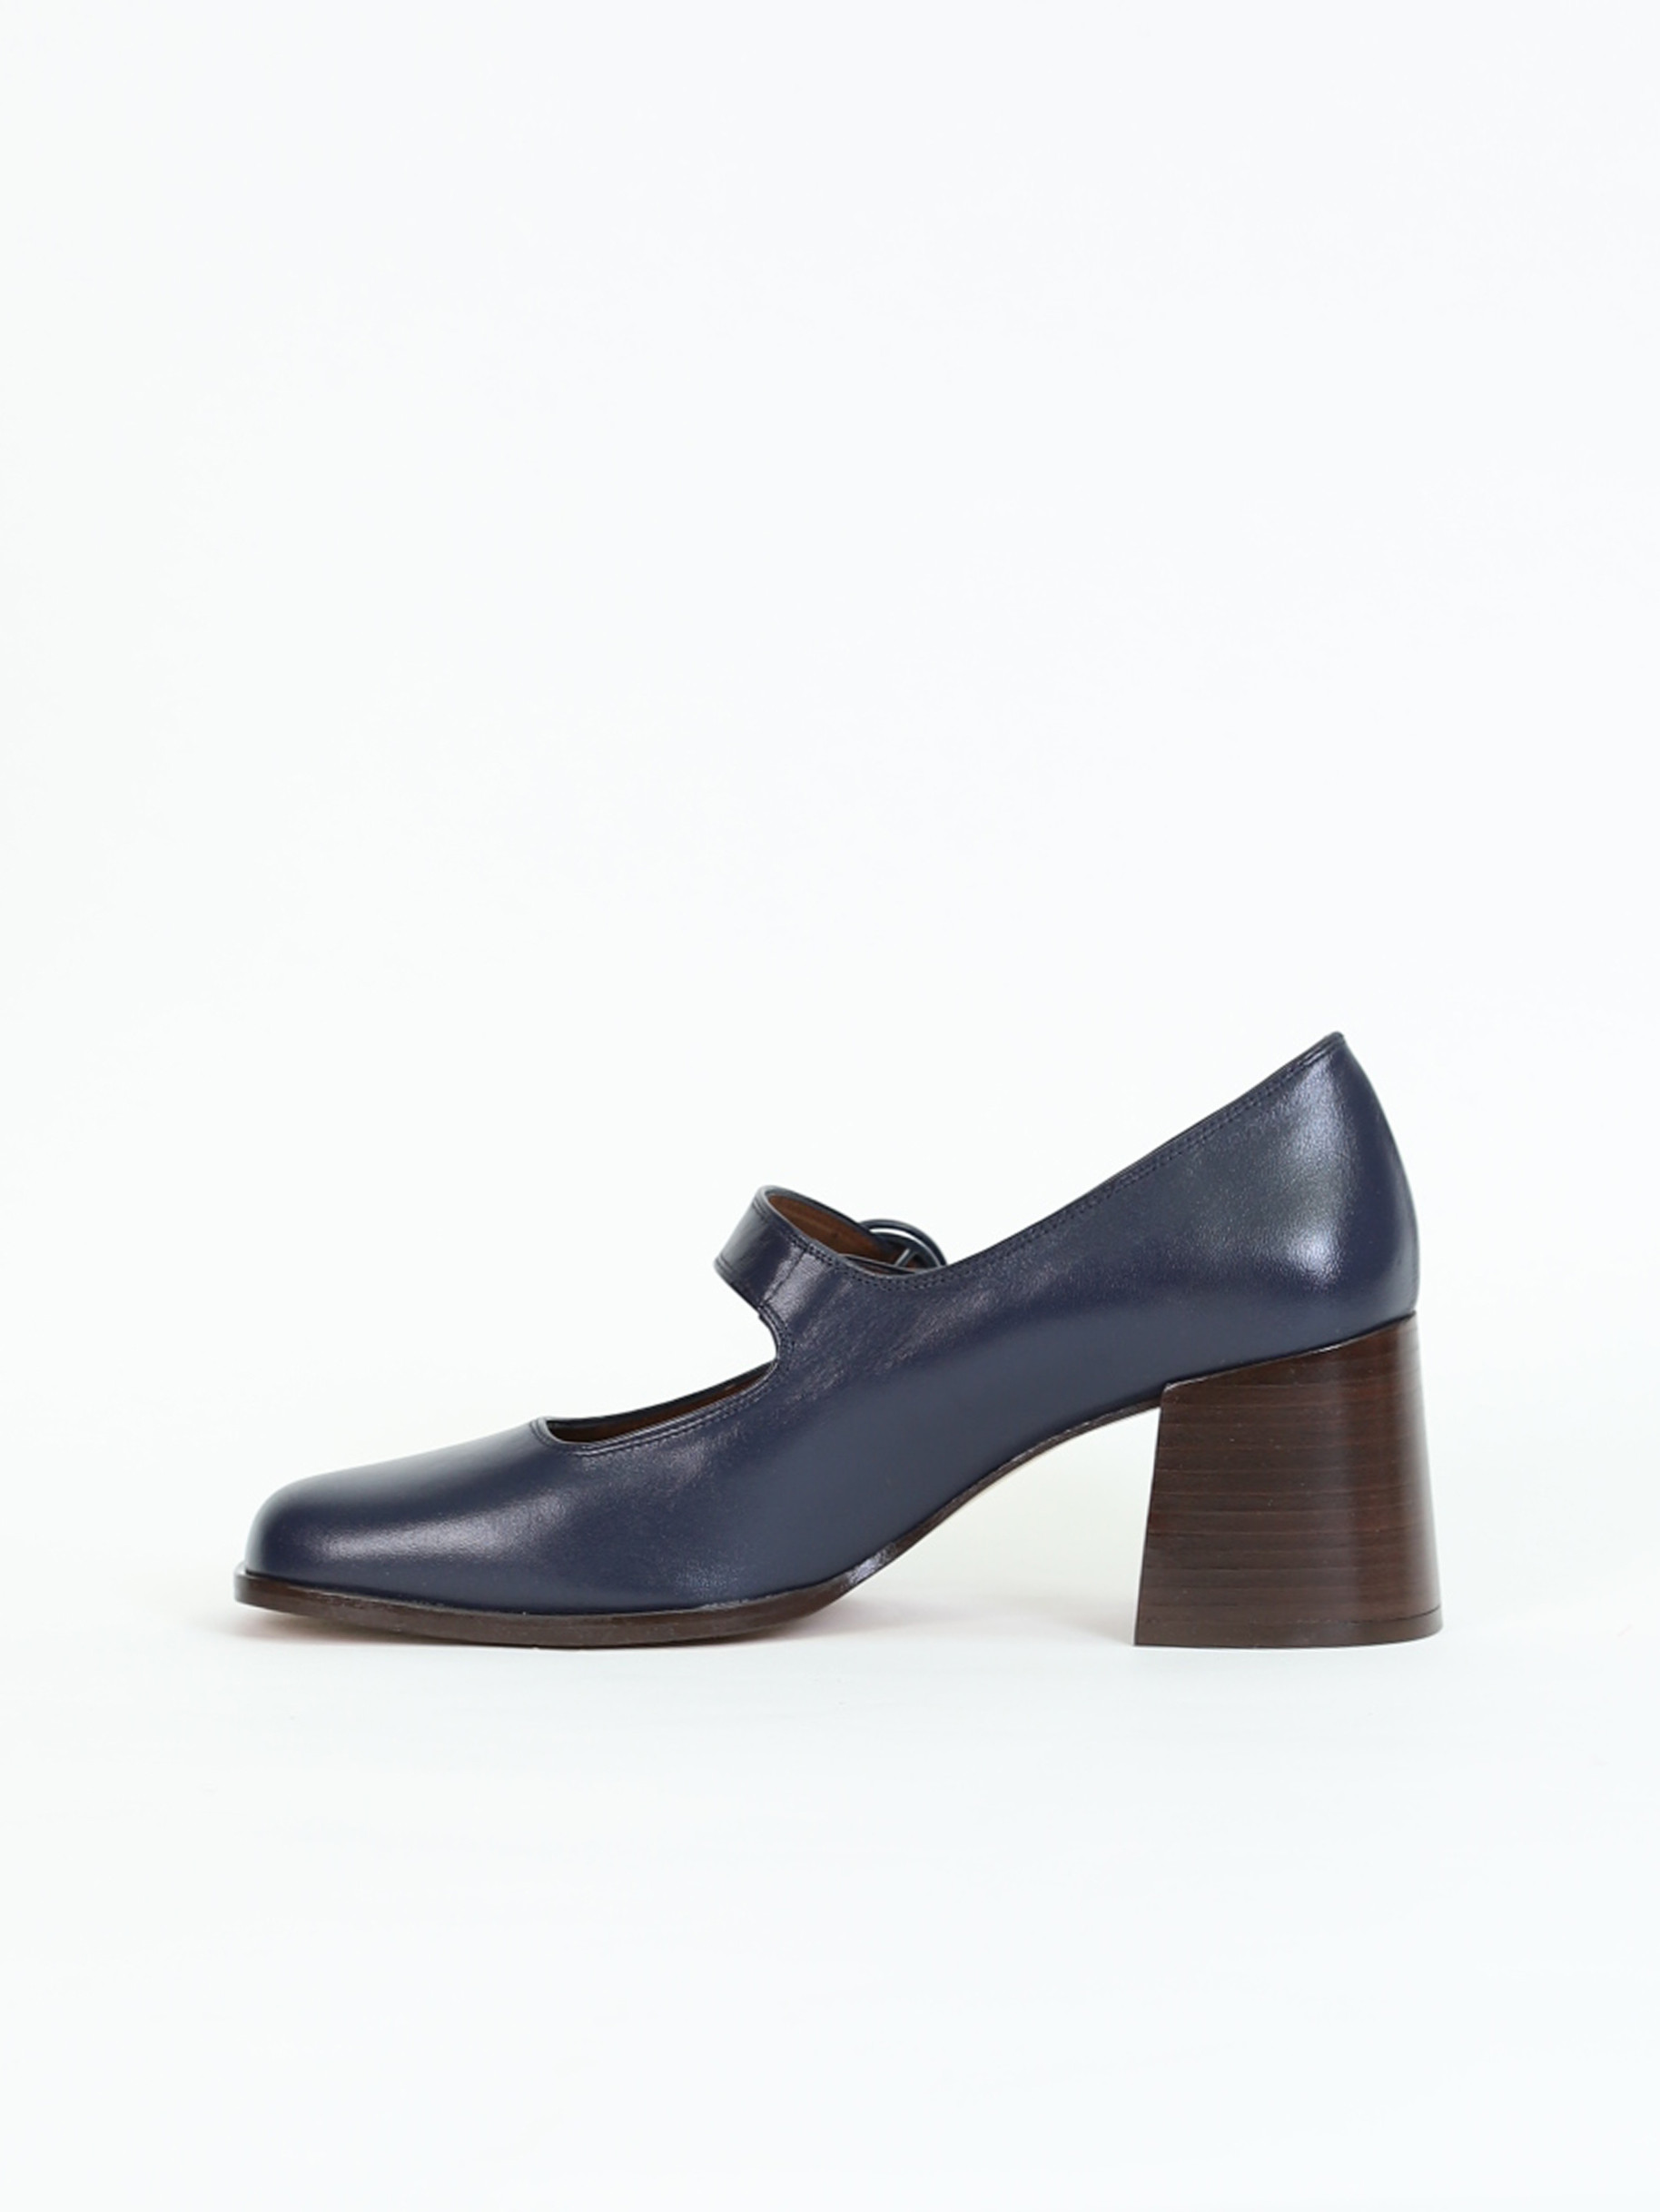 CAREN blue leather Mary Janes | Carel Paris Shoes